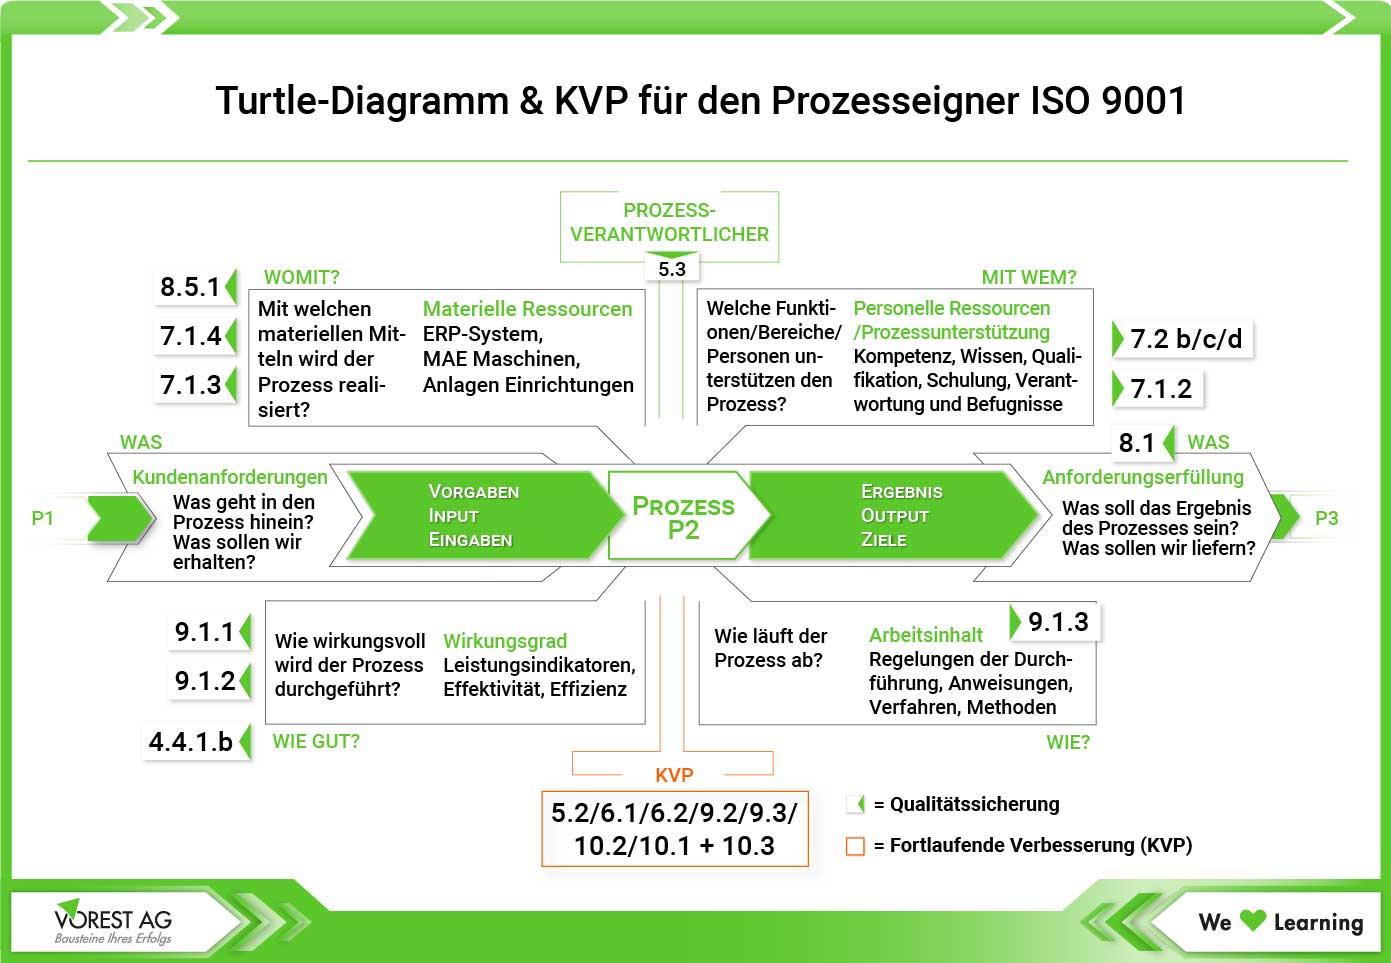 Das Turtle Diagramm und KVP für den Prozesseigner ISO 9001